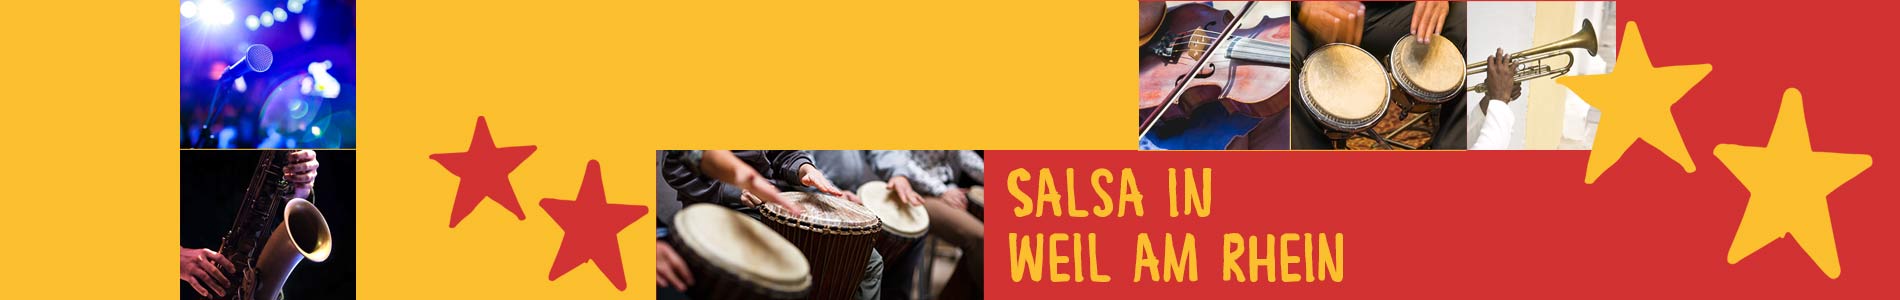 Salsa in Weil am Rhein – Salsa lernen und tanzen, Tanzkurse, Partys, Veranstaltungen